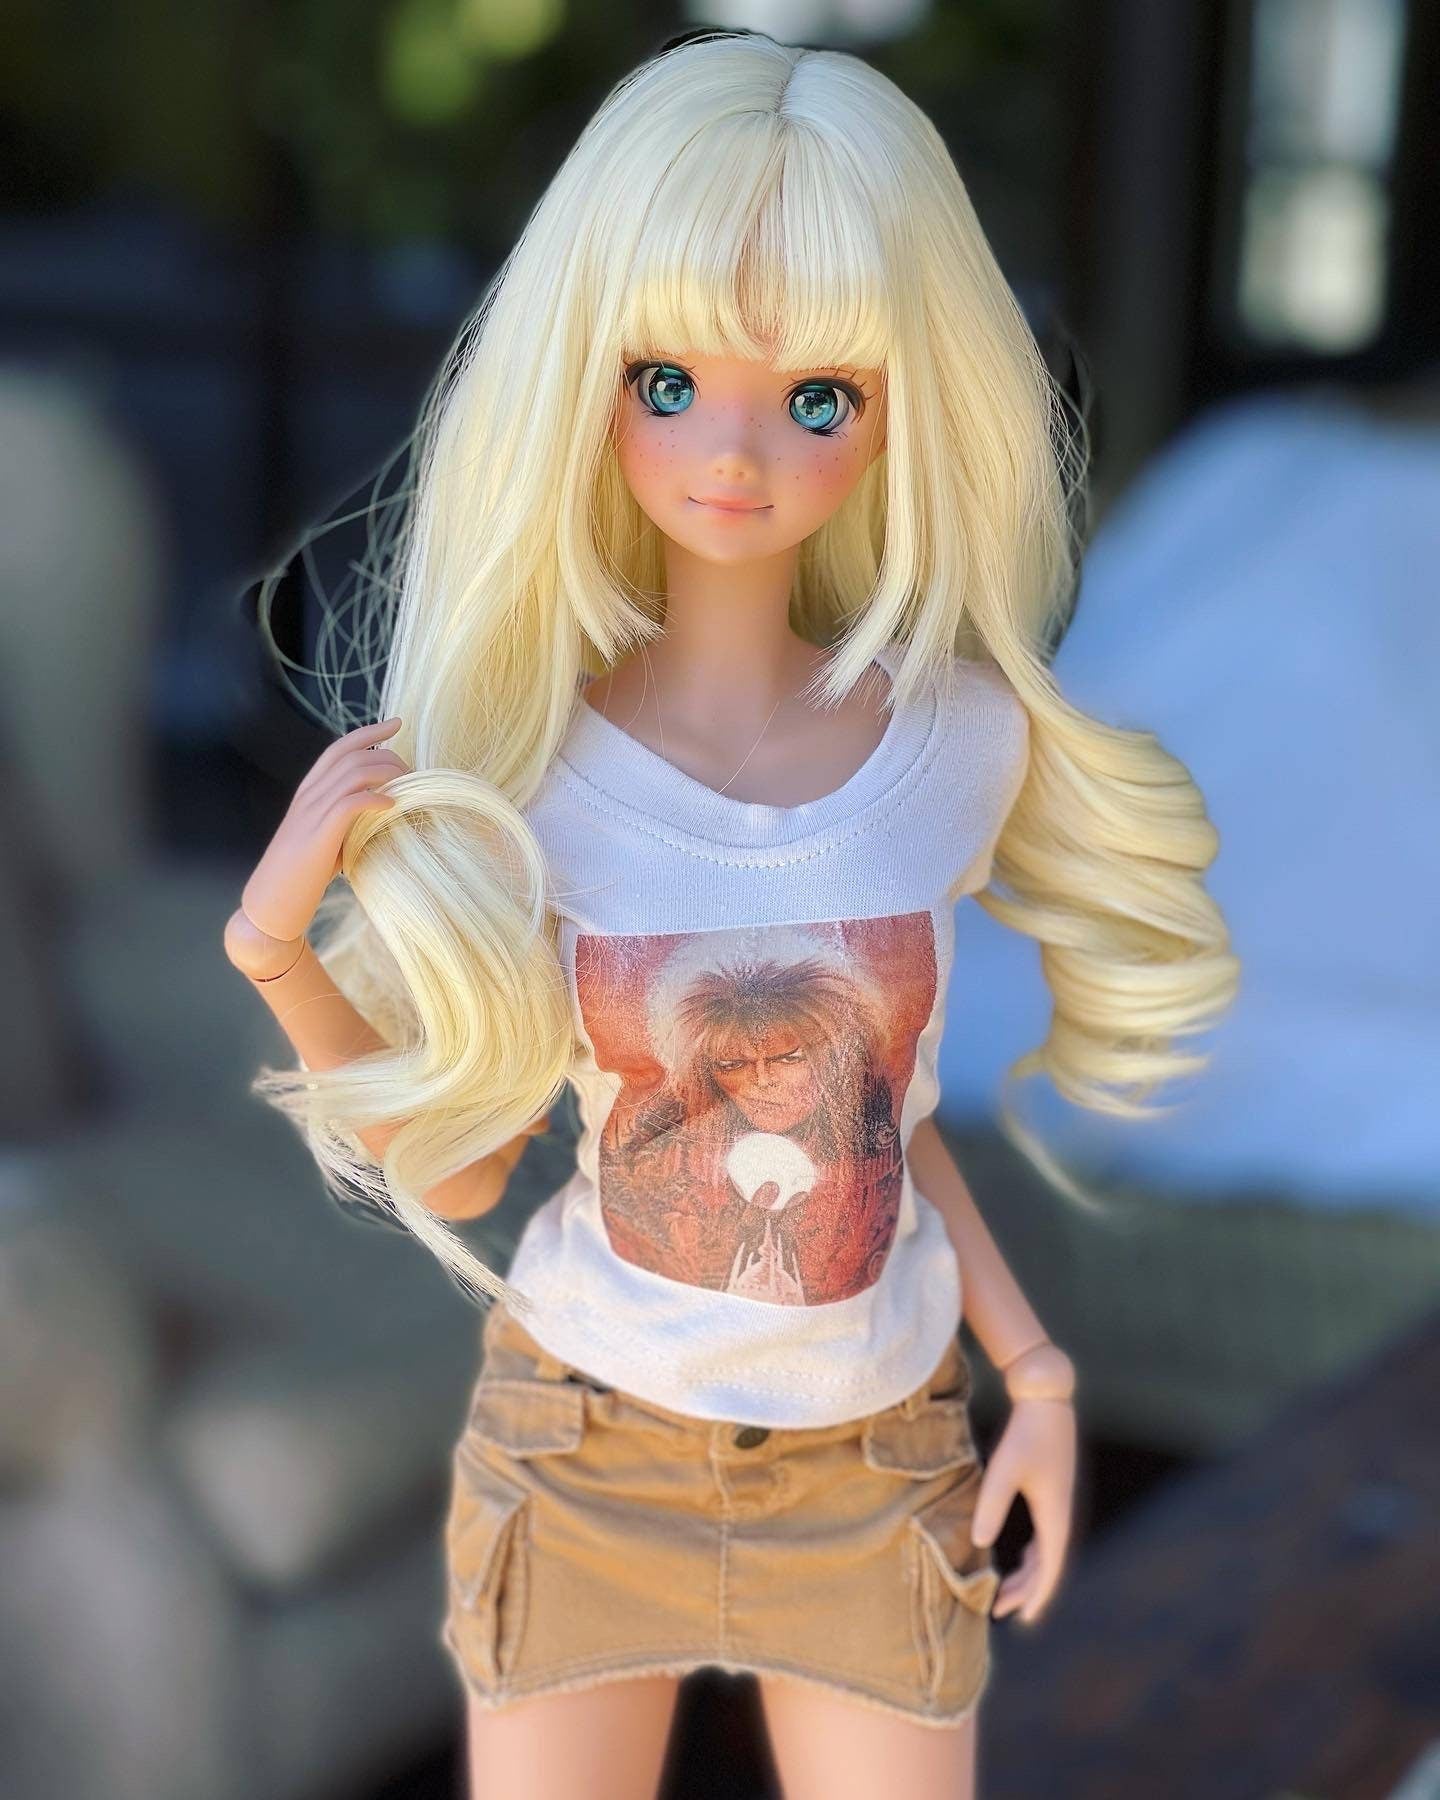 Custom doll Wig for Smart Dolls- Heat Safe - Tangle Resistant- 8.5" head size of Bjd, SD, Dollfie Dream dolls  Miyazono Kaori